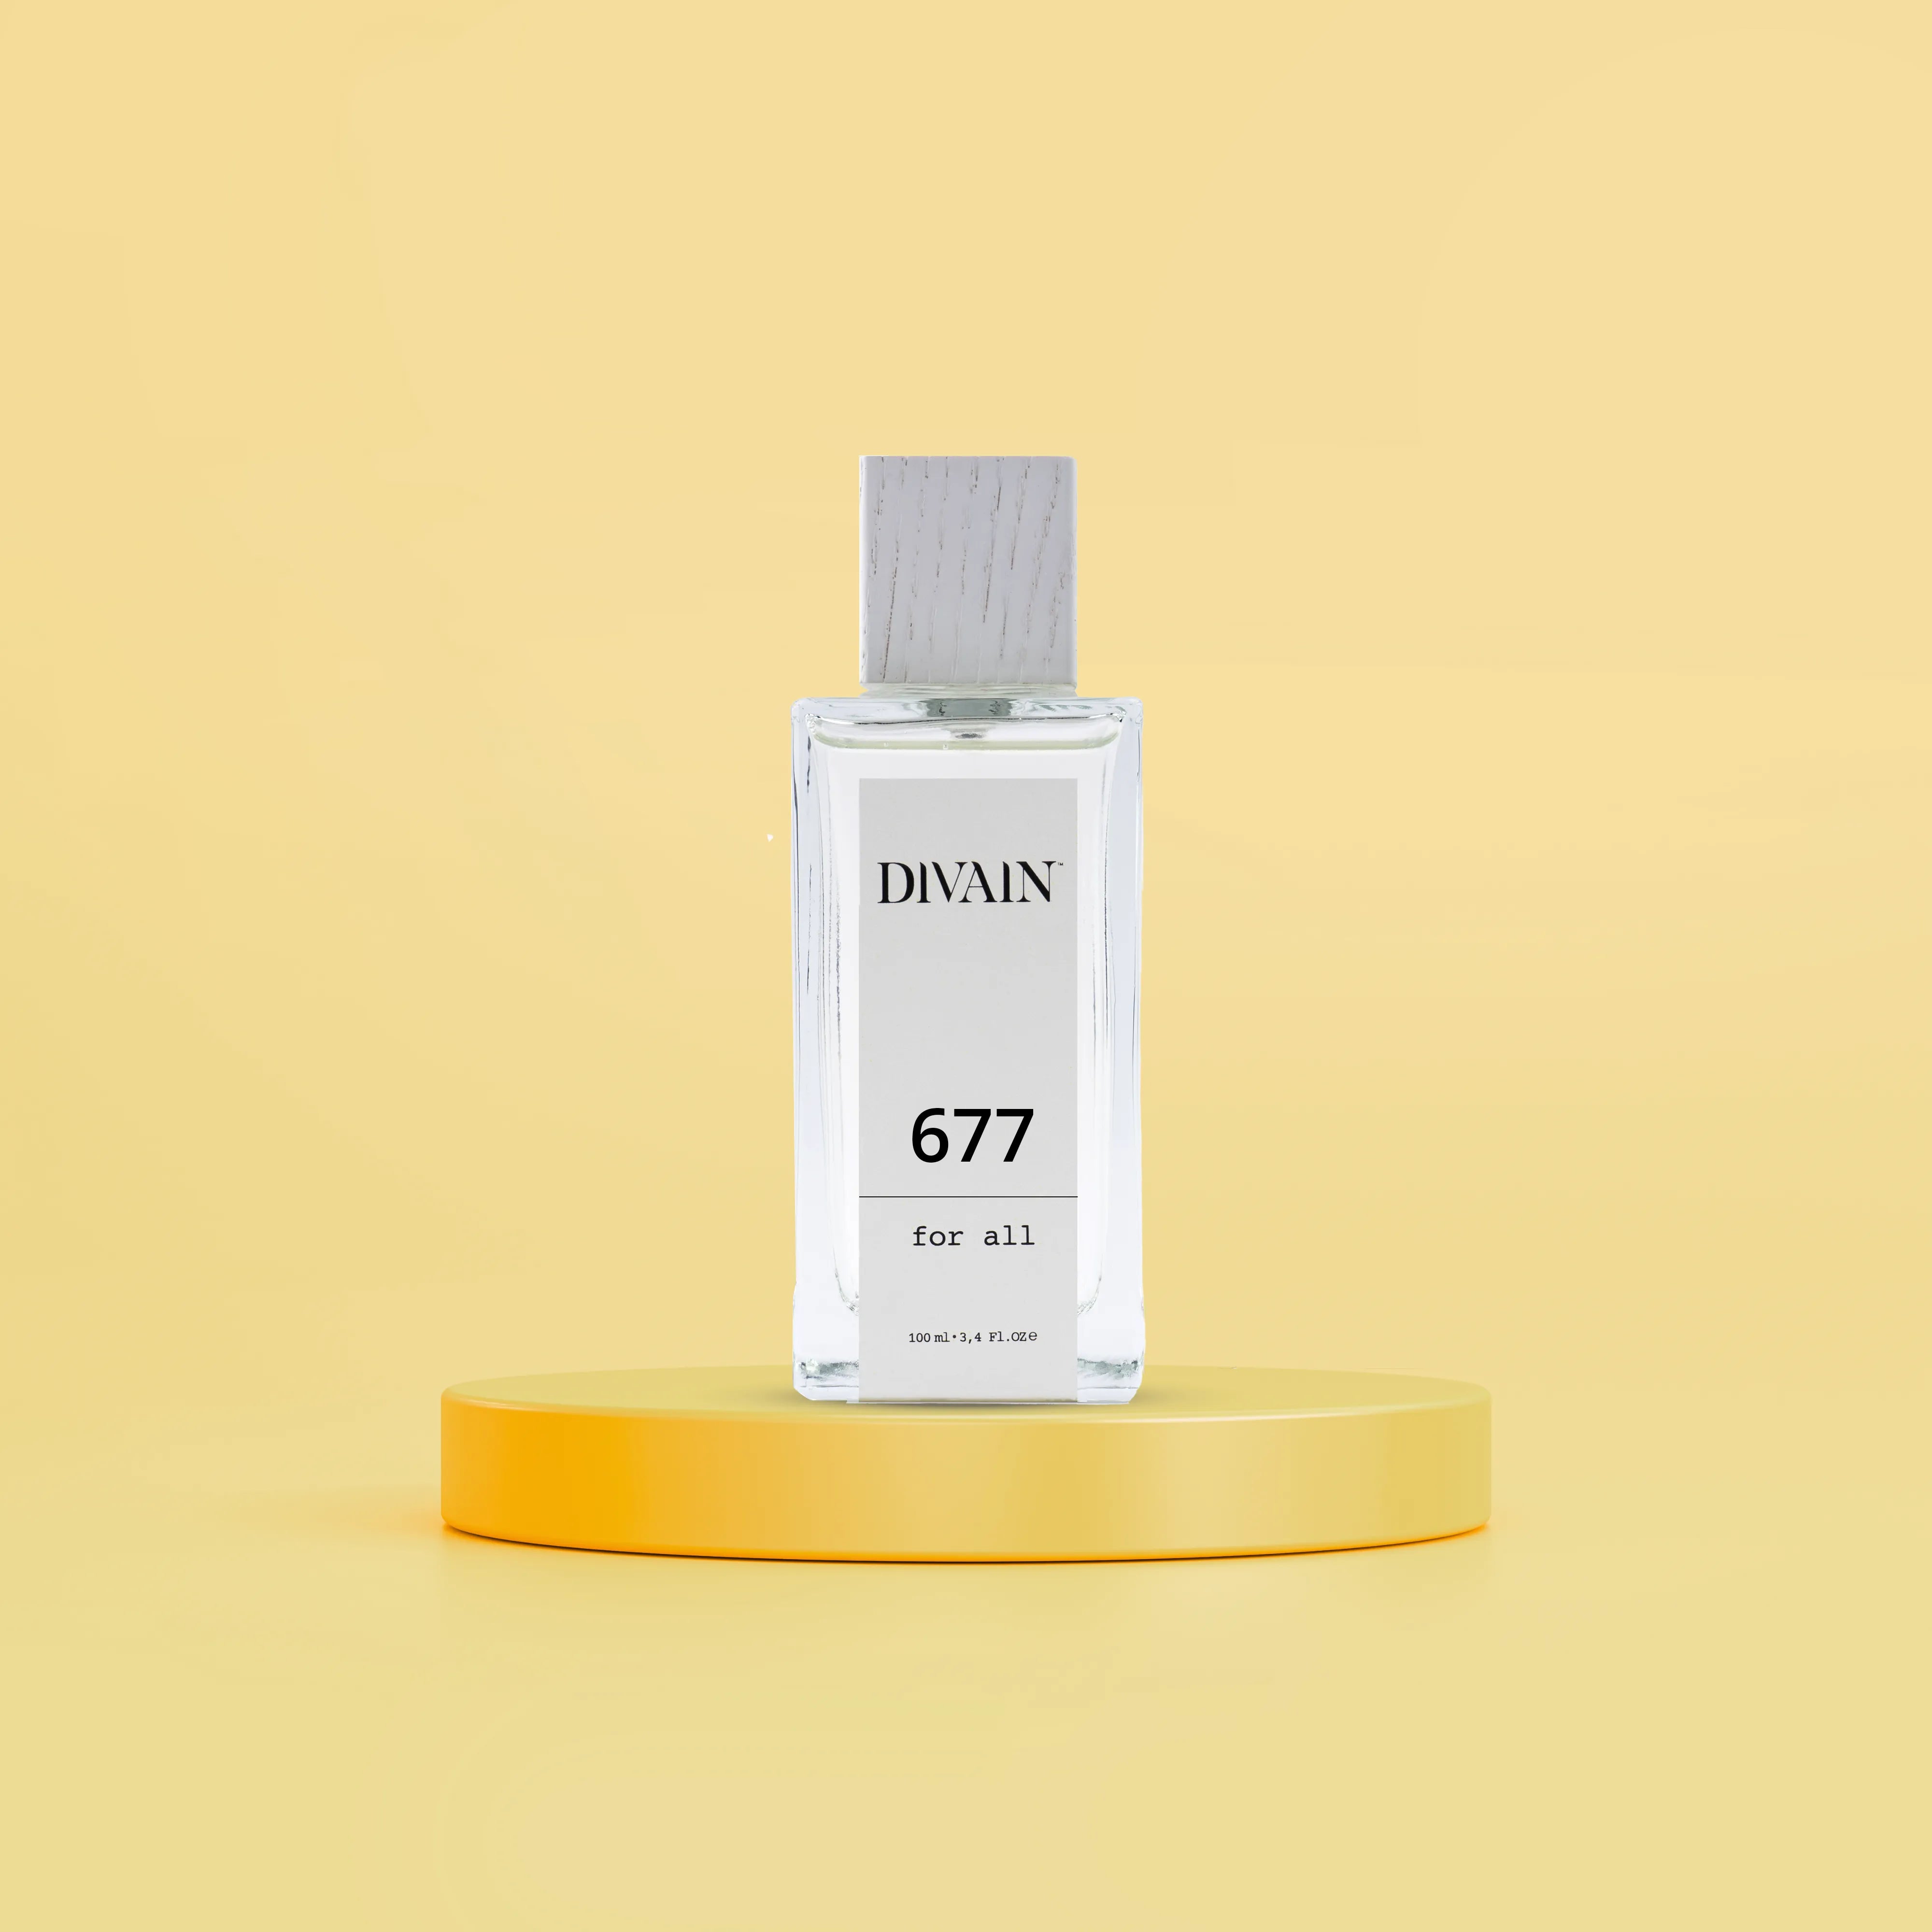 DIVAIN-677 | UNISEX